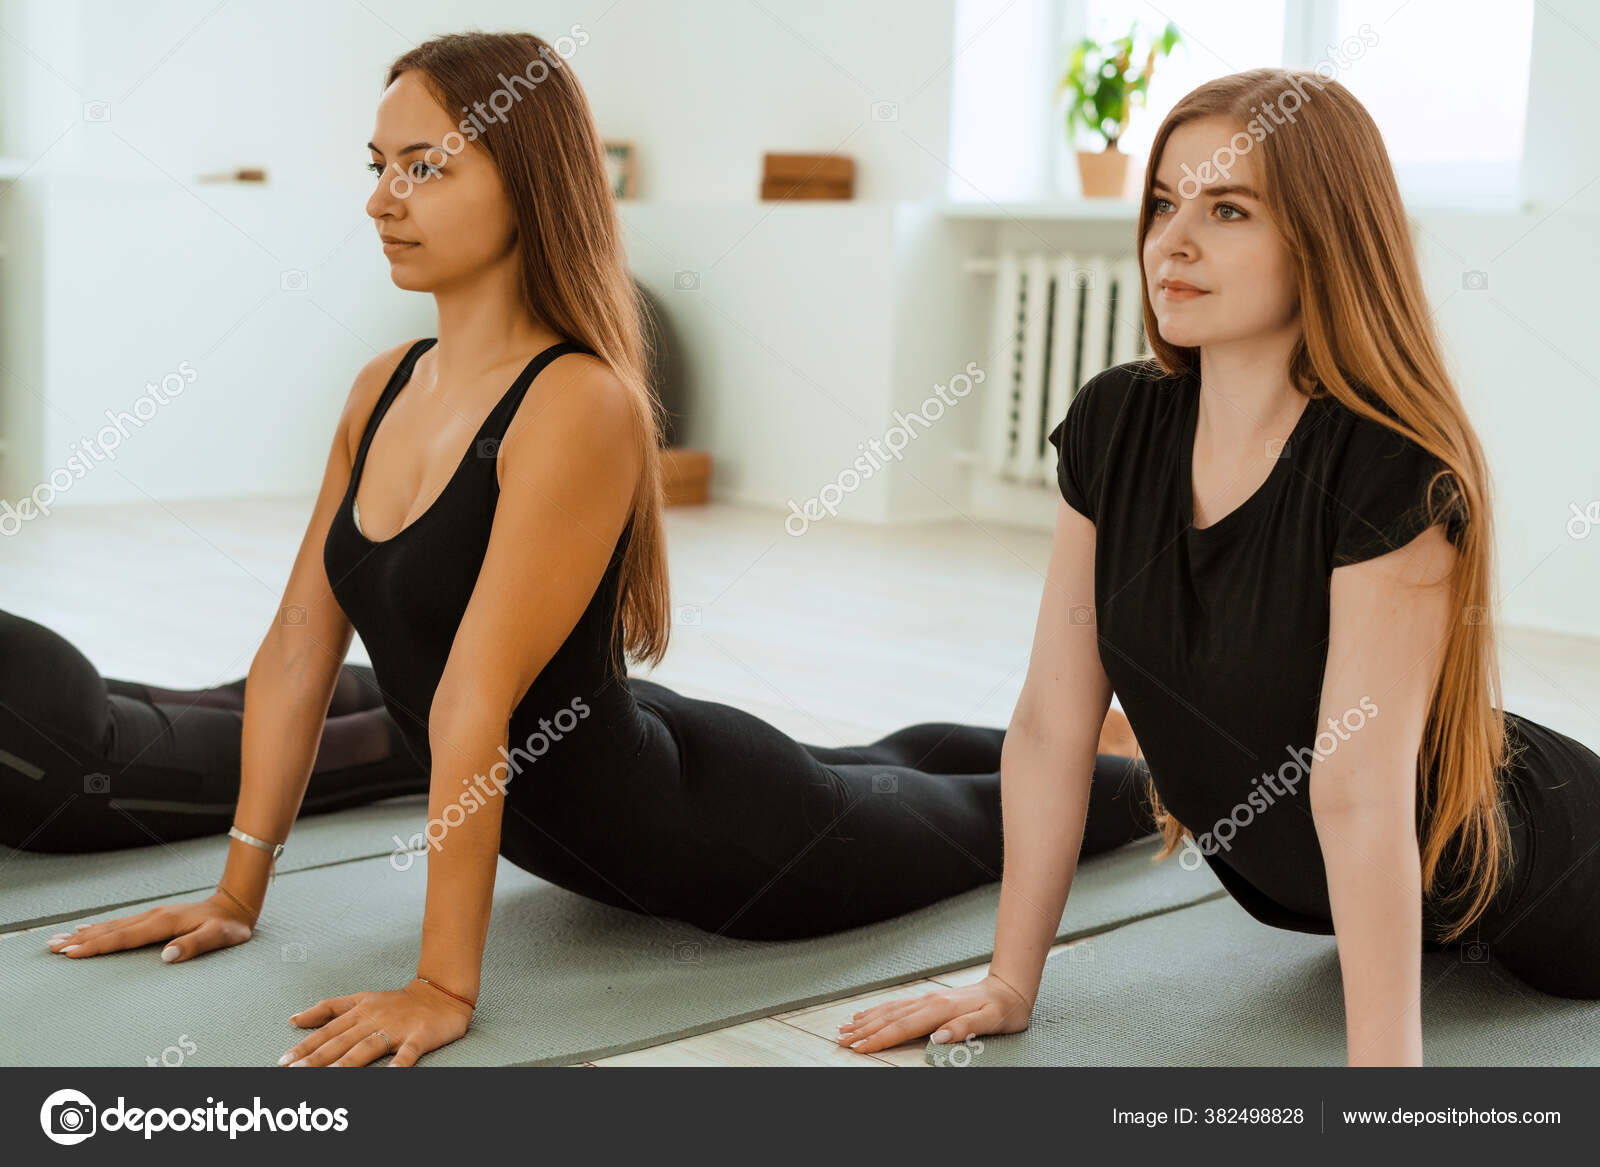 Yoga sex Stockfotos, lizenzfreie Yoga sex Bilder Depositphotos Bild